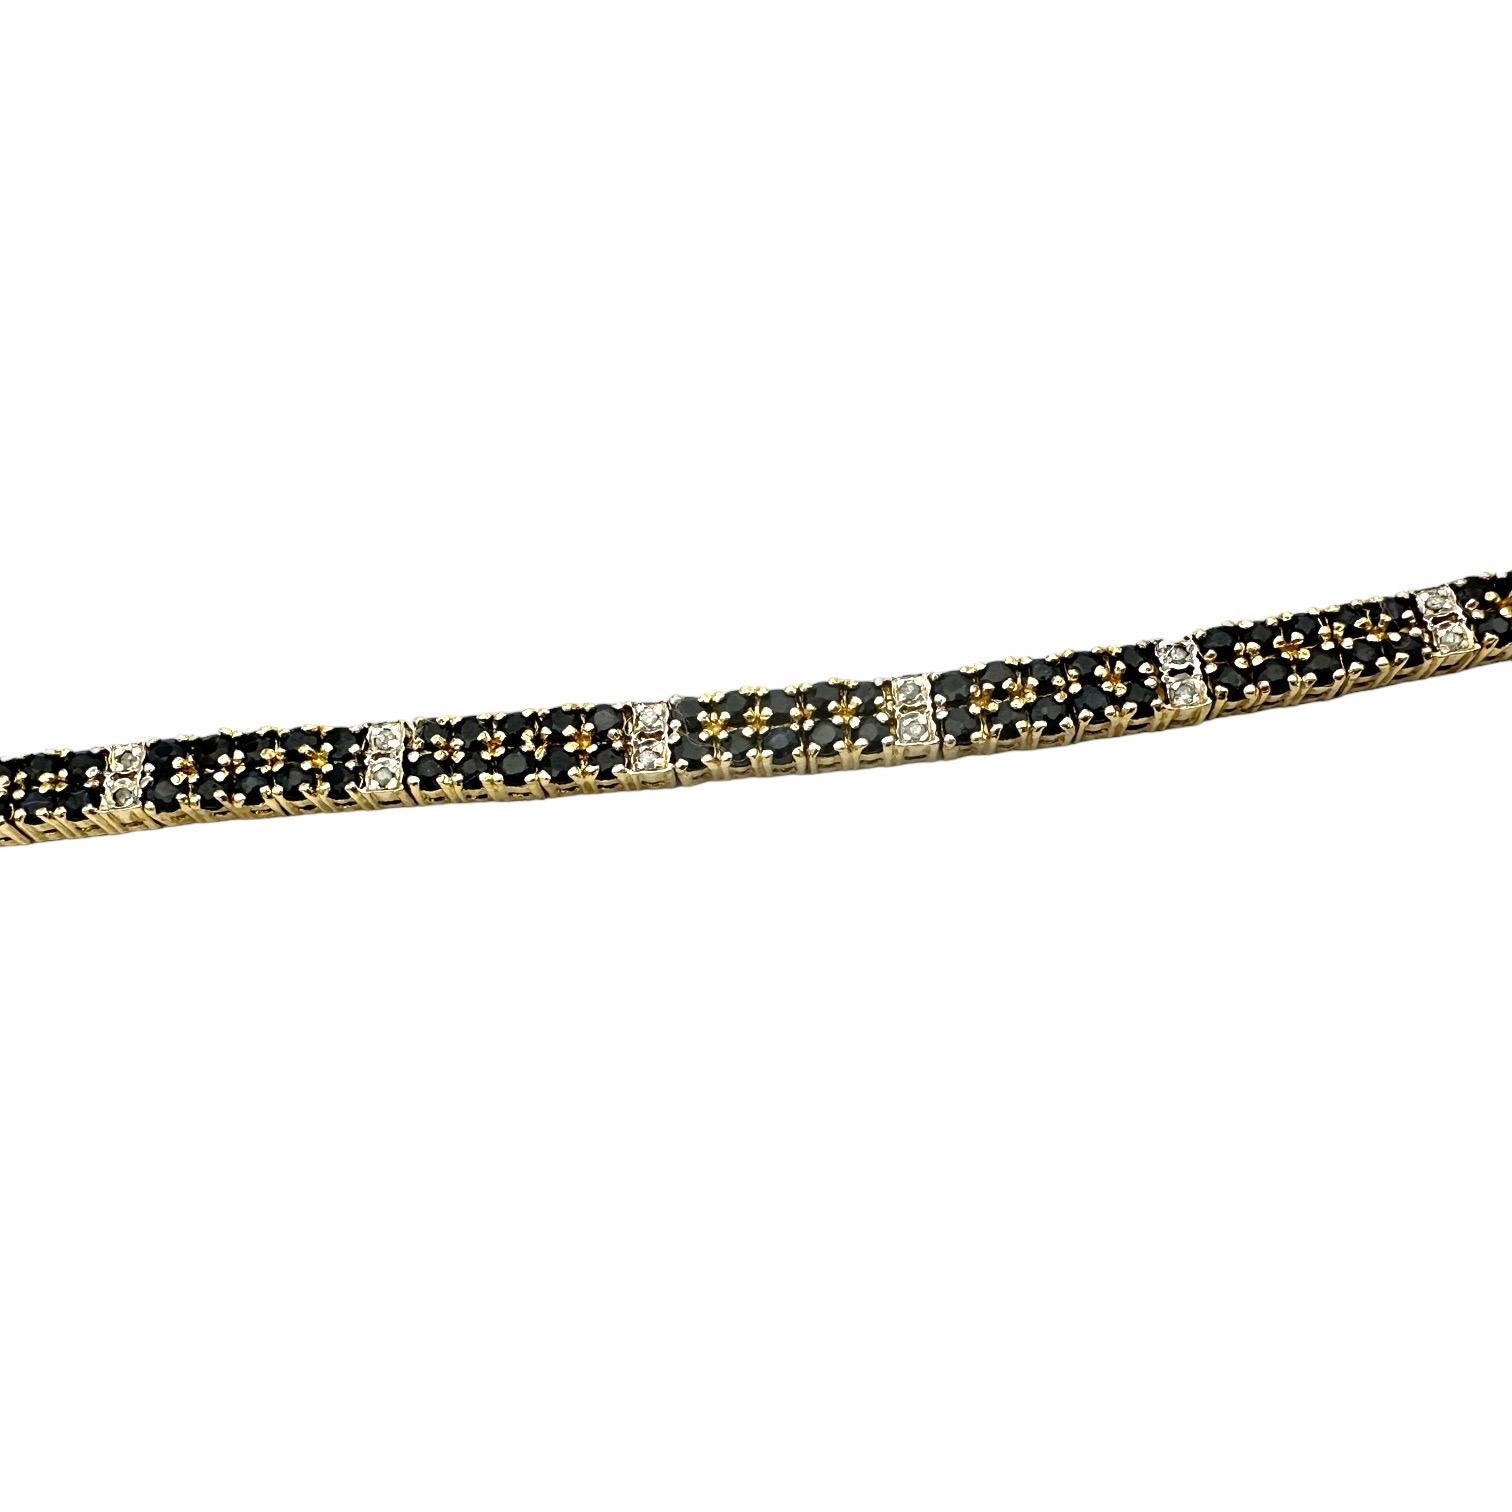 Ce magnifique bracelet saphir noir diamant pavé est réalisé en or sterling électroplaqué et présente une double rangée de pierres saphir noir pour plus d'éclat et de brillance. Son design unique est parfait pour les occasions spéciales tout en